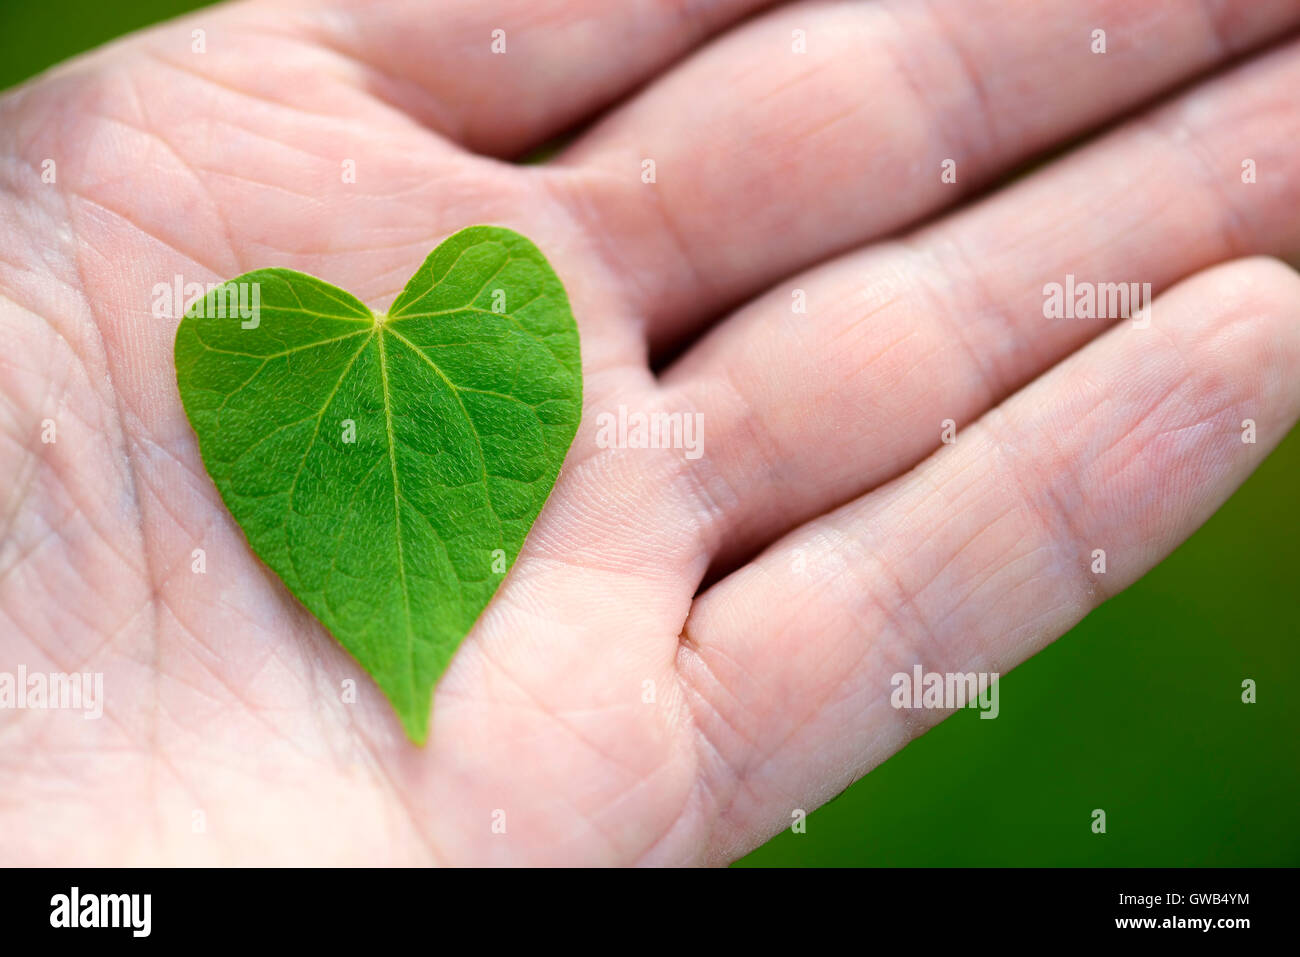 Heart-shaped sheet on a hand, Herzfoermiges Blatt auf einer Hand Stock Photo